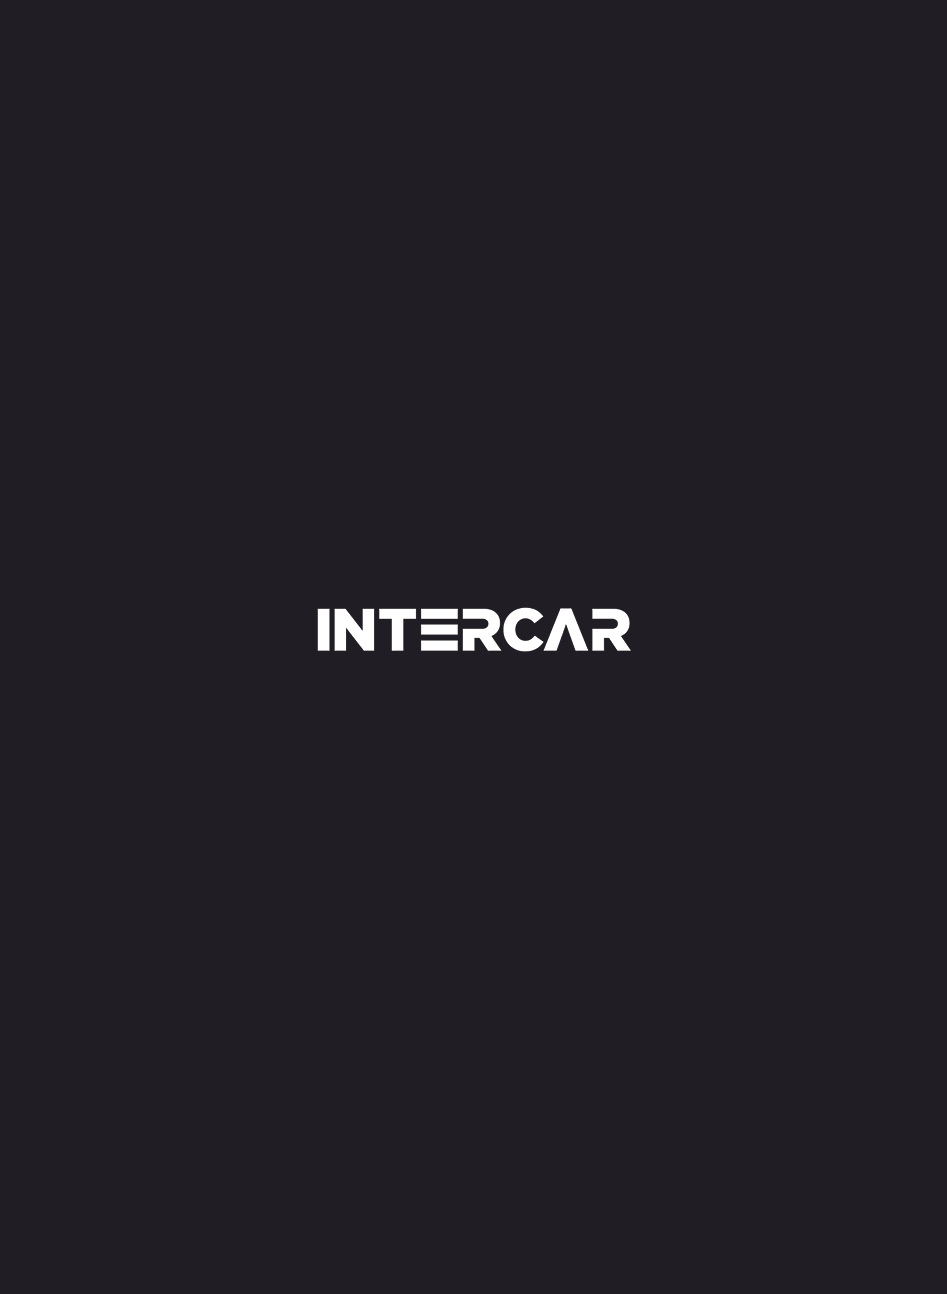 Intercar | Récit